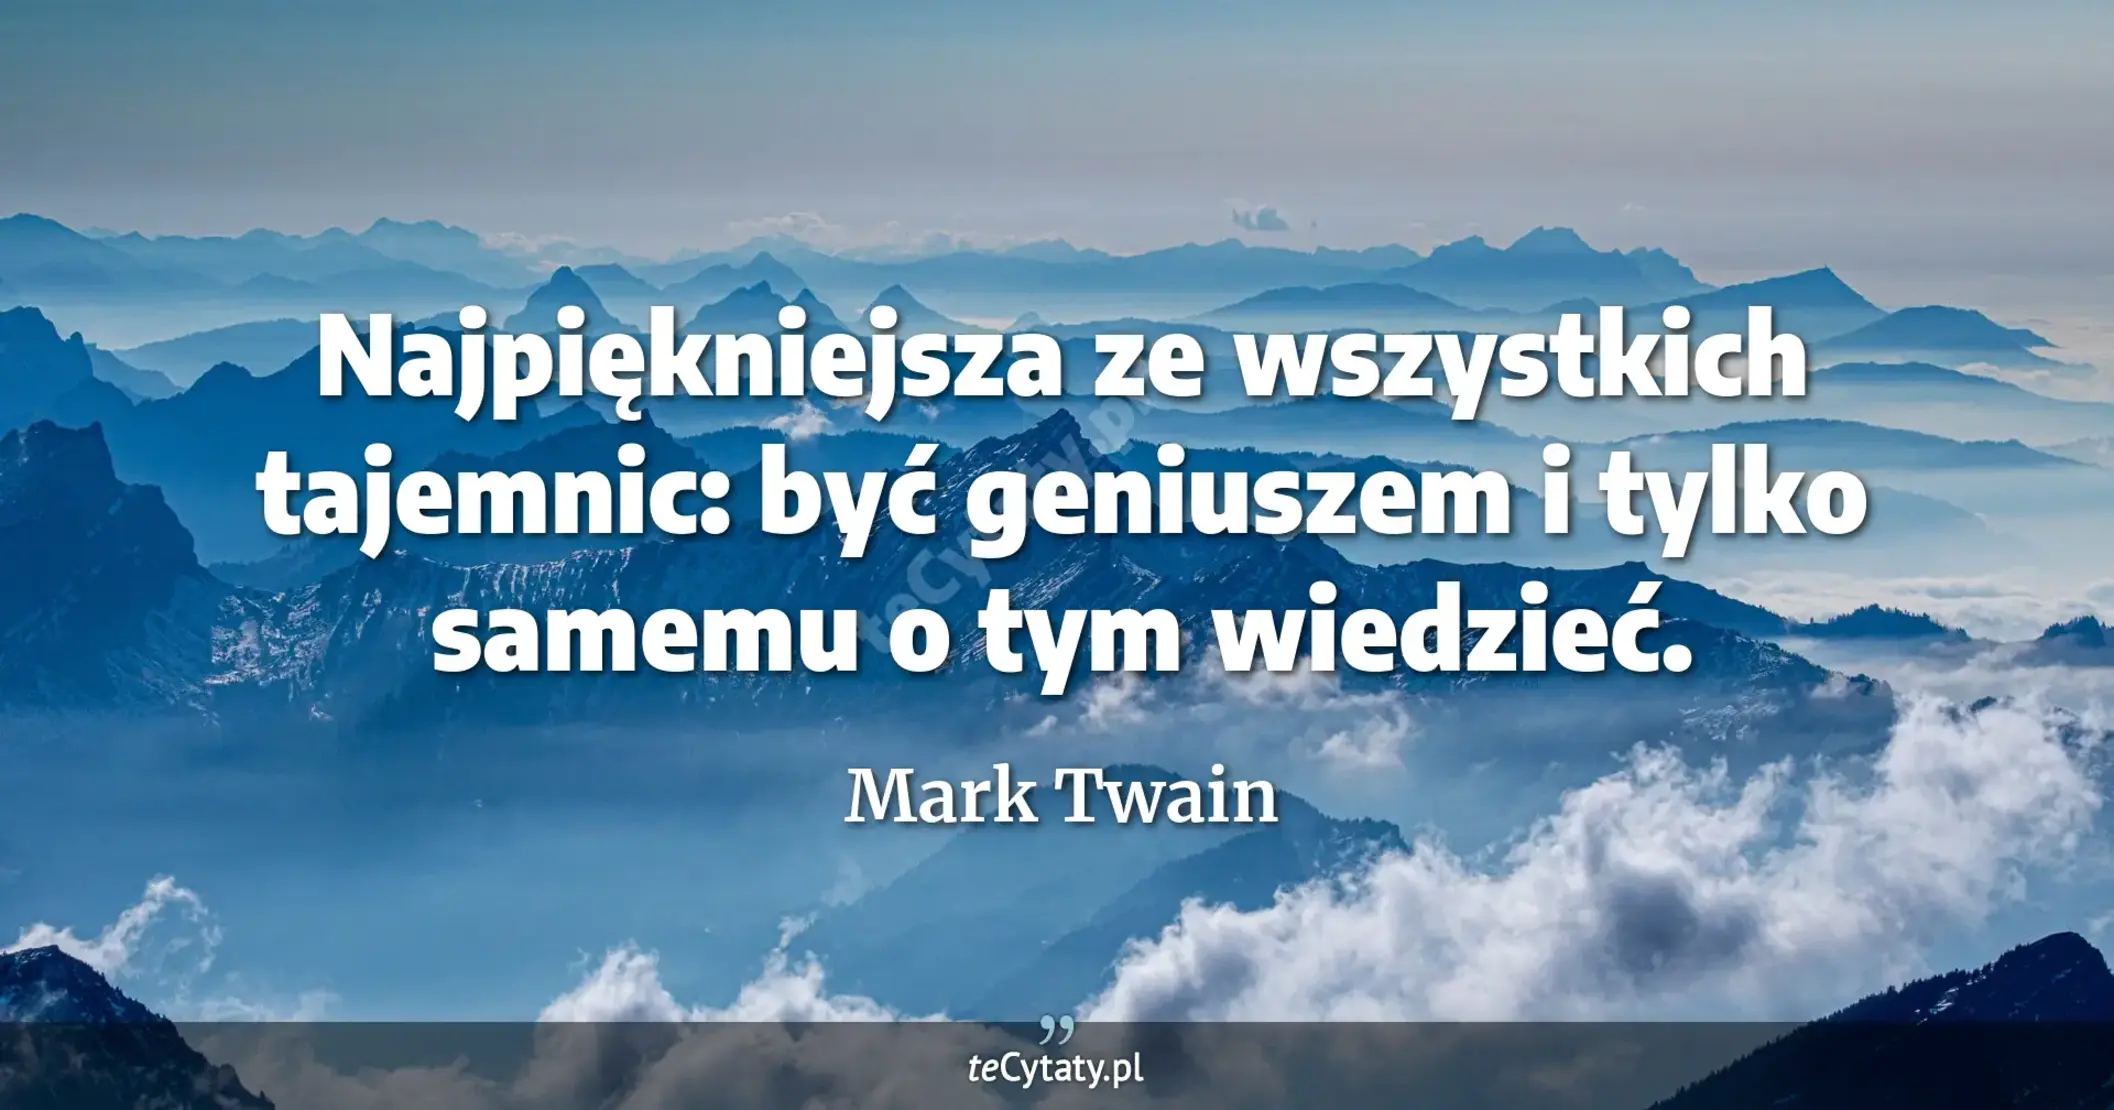 Najpiękniejsza ze wszystkich tajemnic: być geniuszem i tylko samemu o tym wiedzieć. - Mark Twain